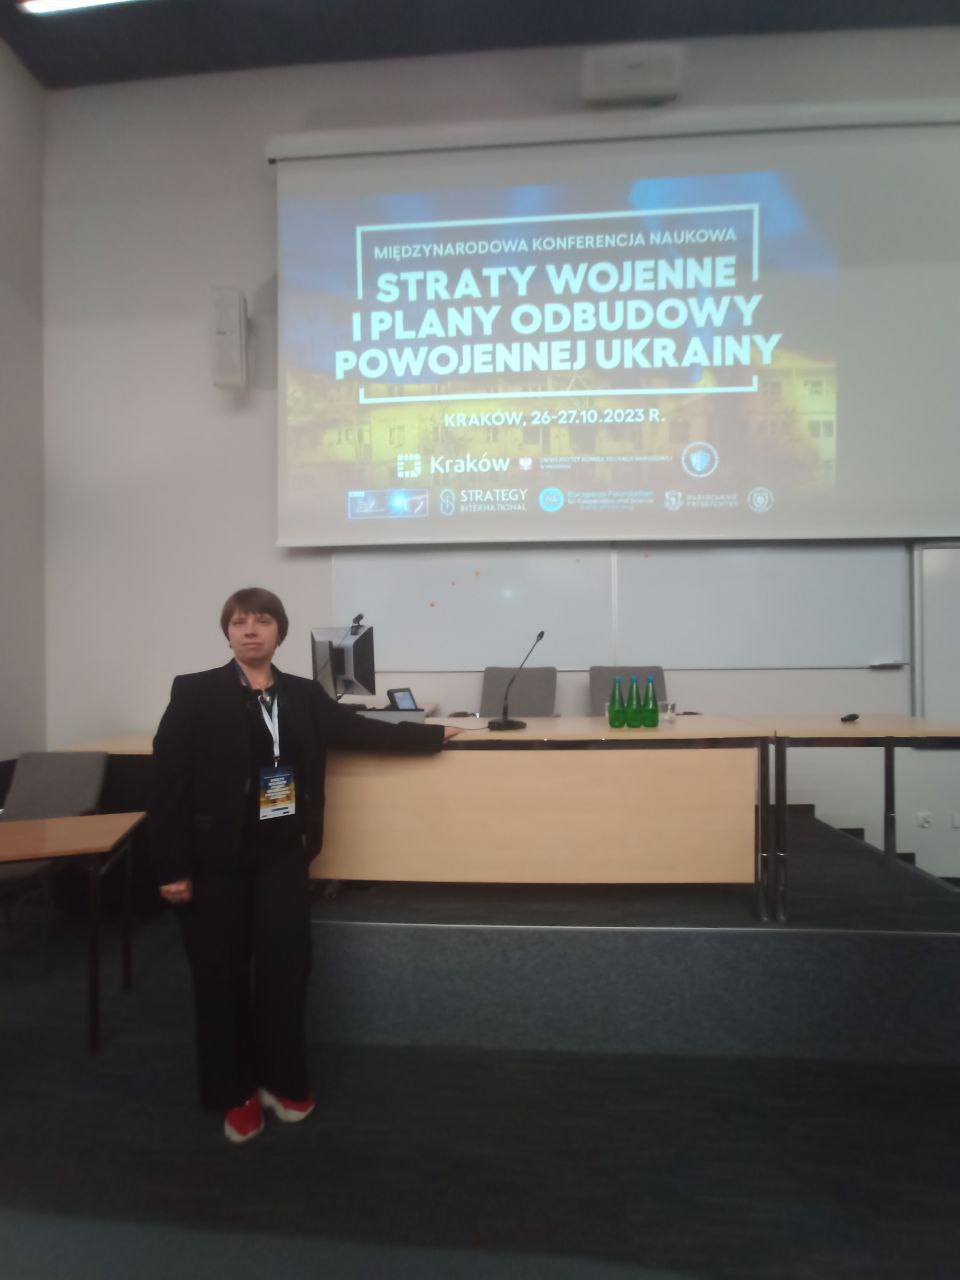 Науковці ФМВ взяли участь у конференції в Кракові